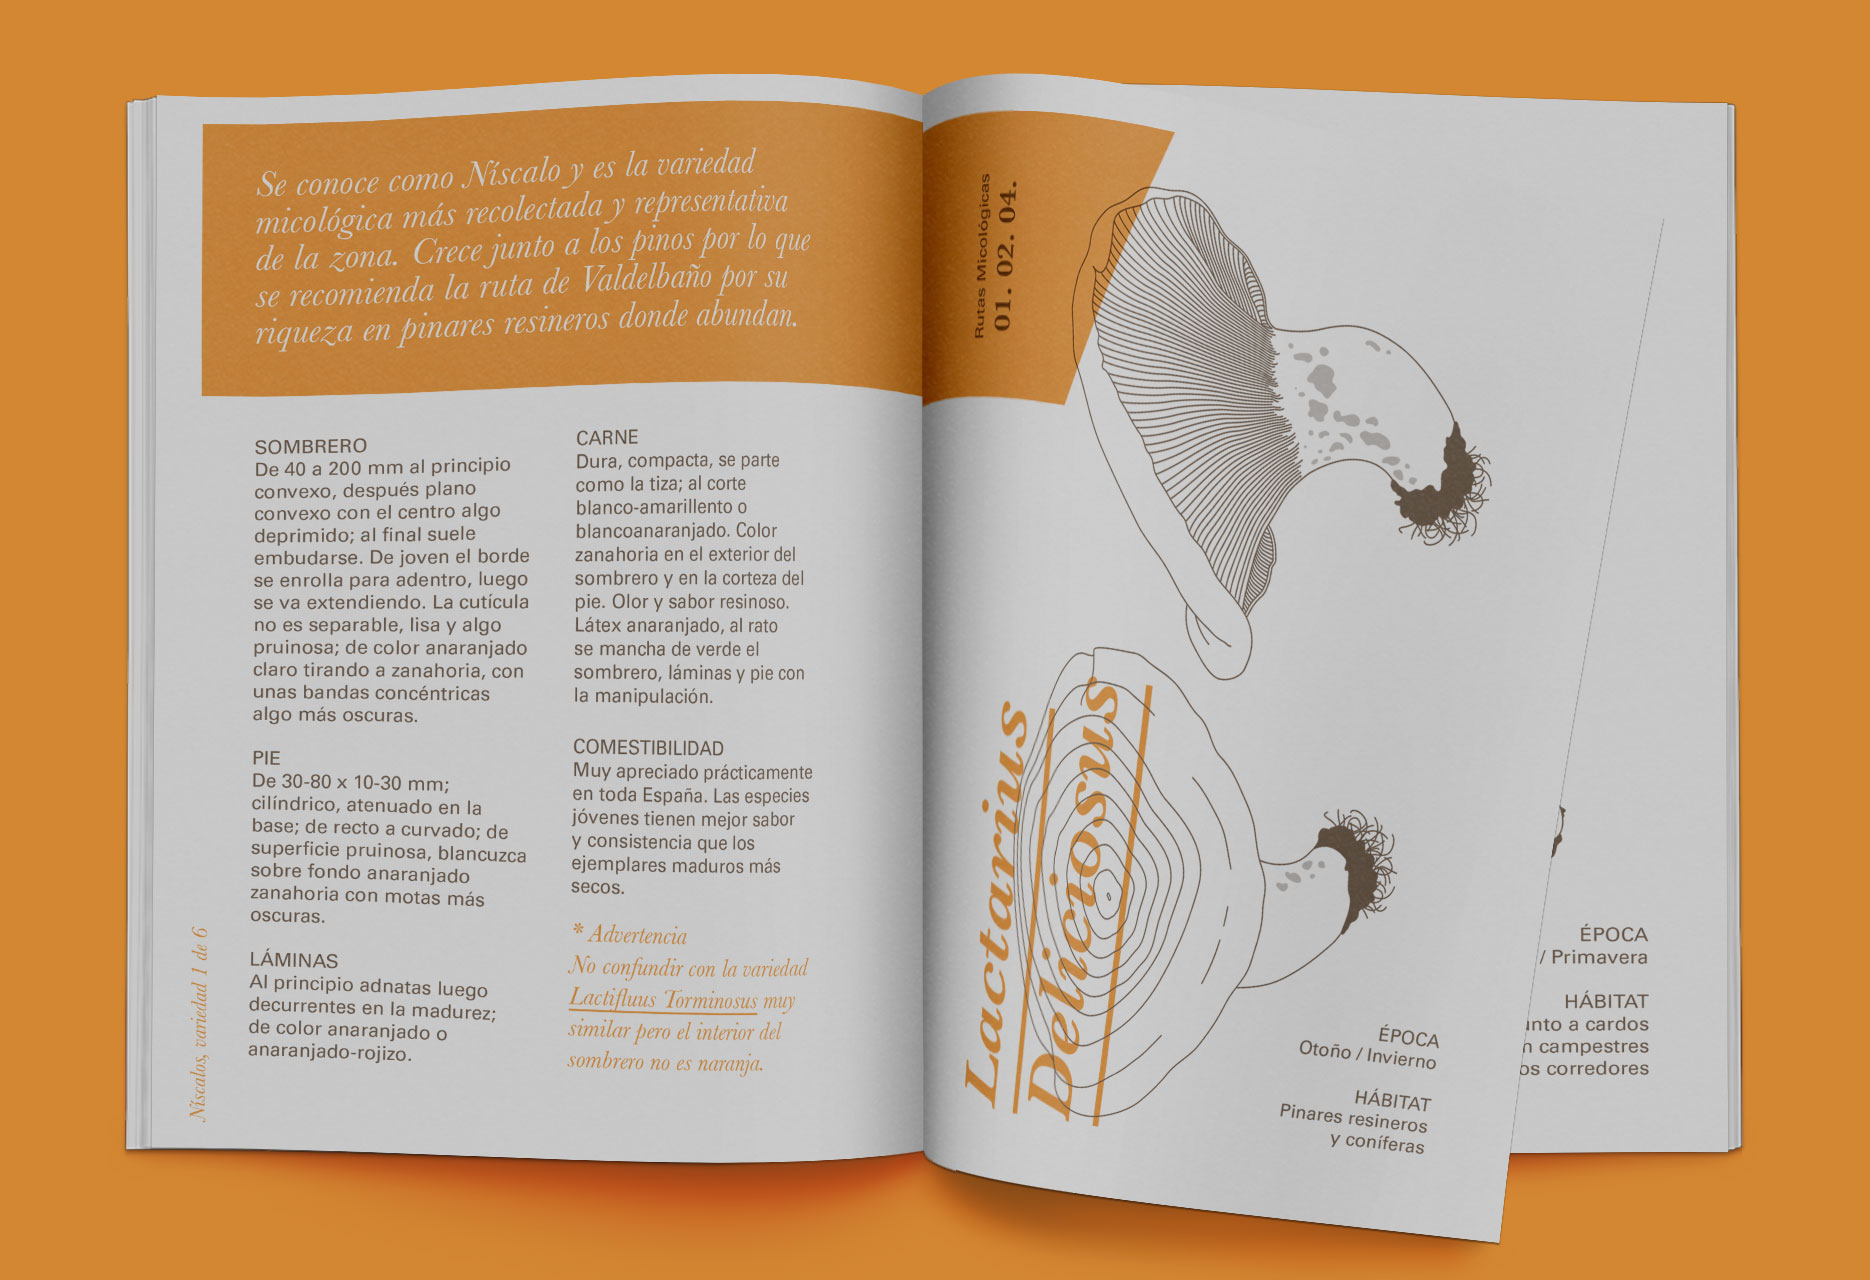 Diseño de marca y guía micológica Tierras de Berlanga - diseño editorial / identidad corporativa / ilustración